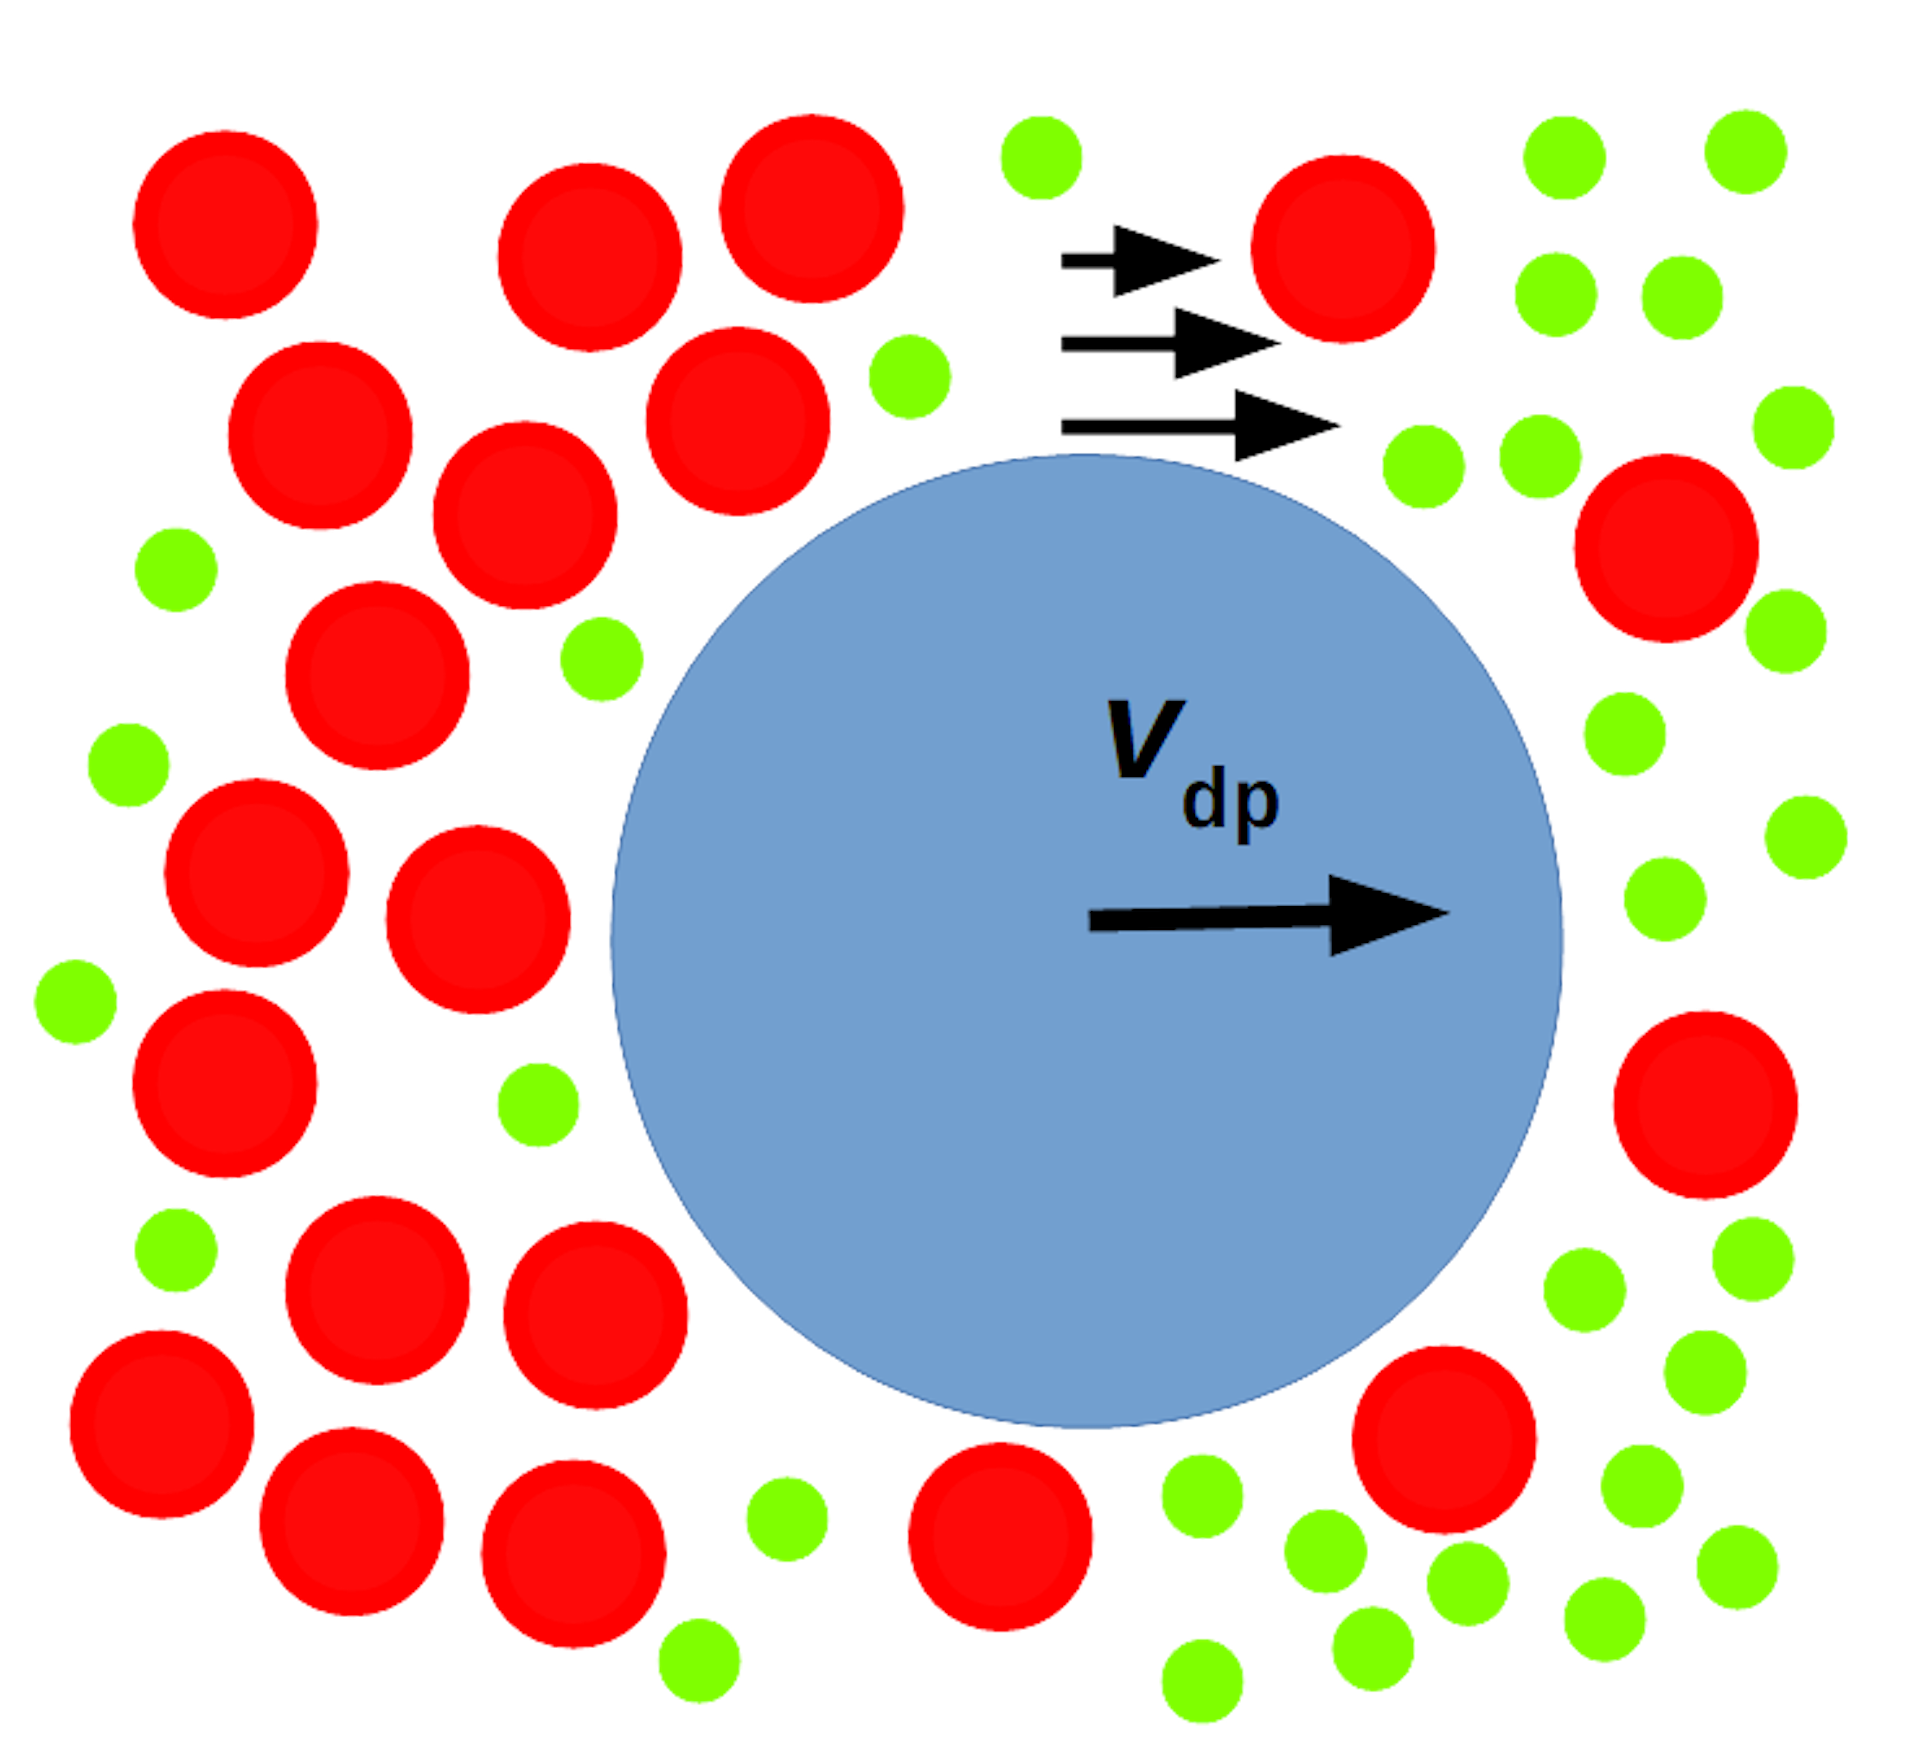 Діаграма великого синього кола, яке рухається праворуч, разом із червоними колами середнього розміру навколо нього також рухається праворуч, де є більша концентрація маленьких зелених кіл